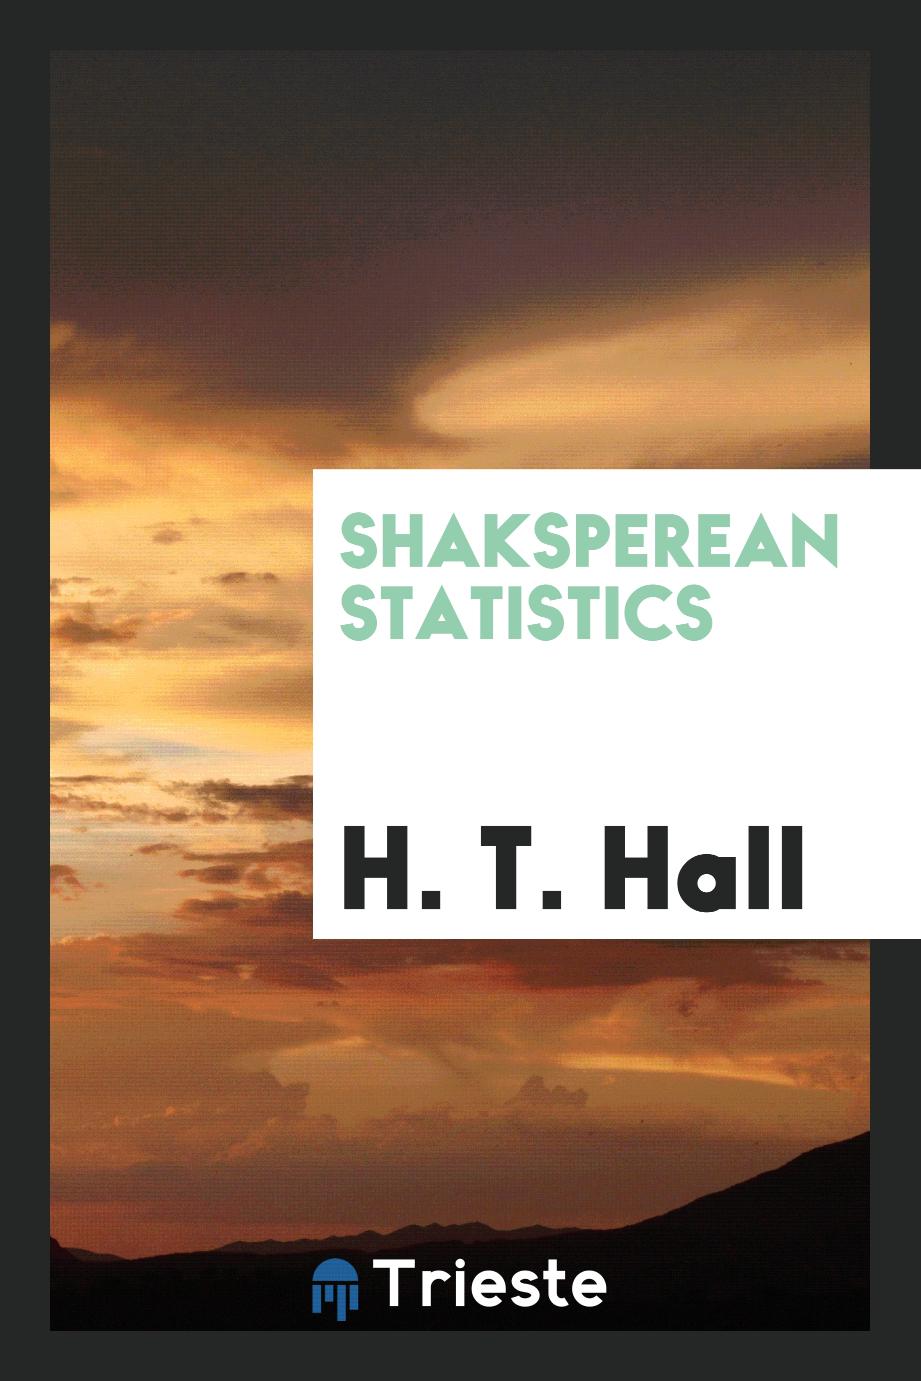 Shaksperean statistics